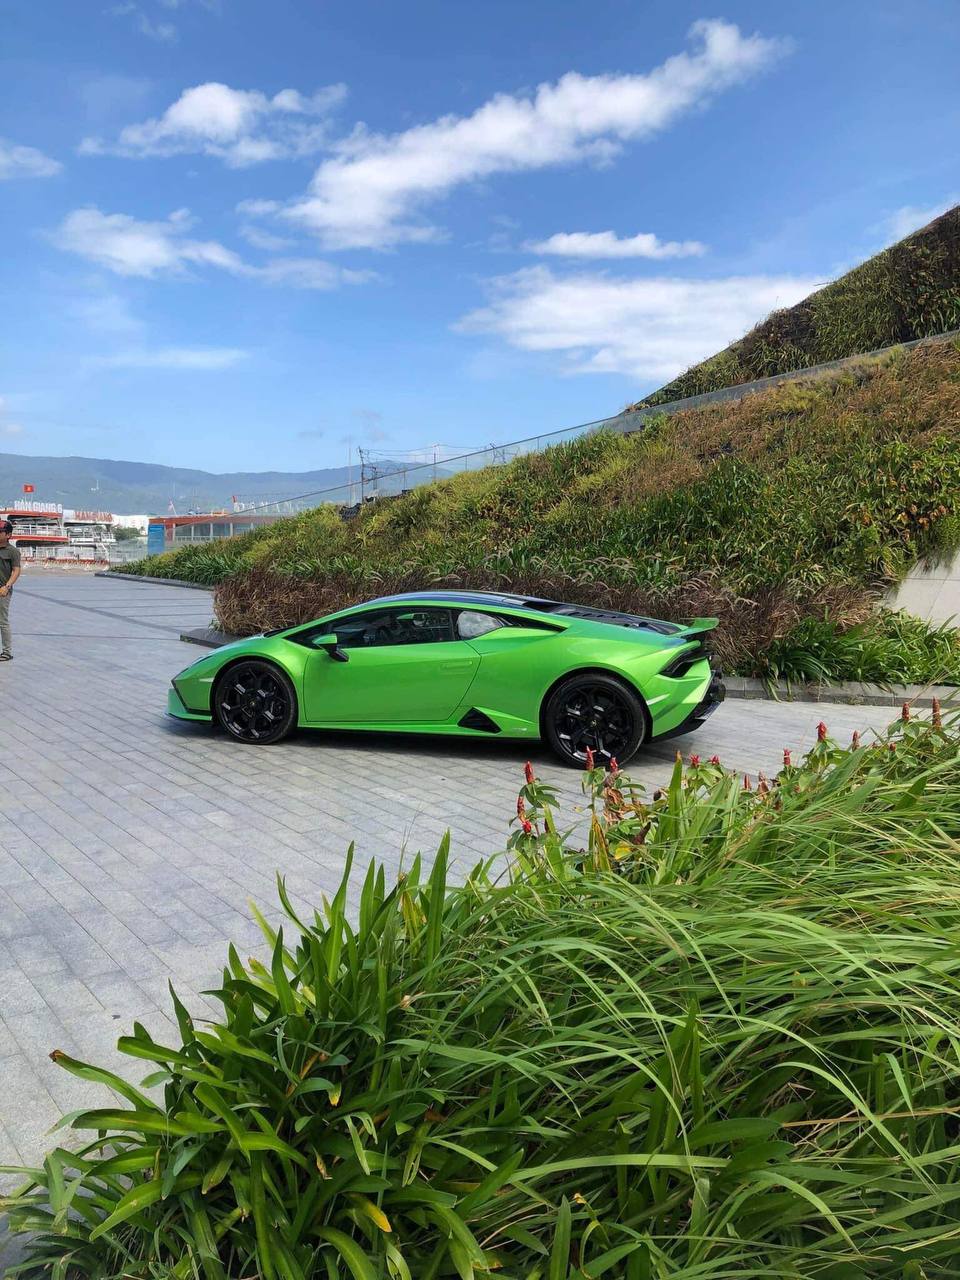 Chiếc xe Lamborghini Huracan Tecnica đầy sức mạnh luôn là một trong những biểu tượng của đẳng cấp. Hình ảnh chân thực và sống động sẽ giúp bạn cảm nhận được những đường kính hoành tráng và phong cách tuyệt vời của chiếc xe này.